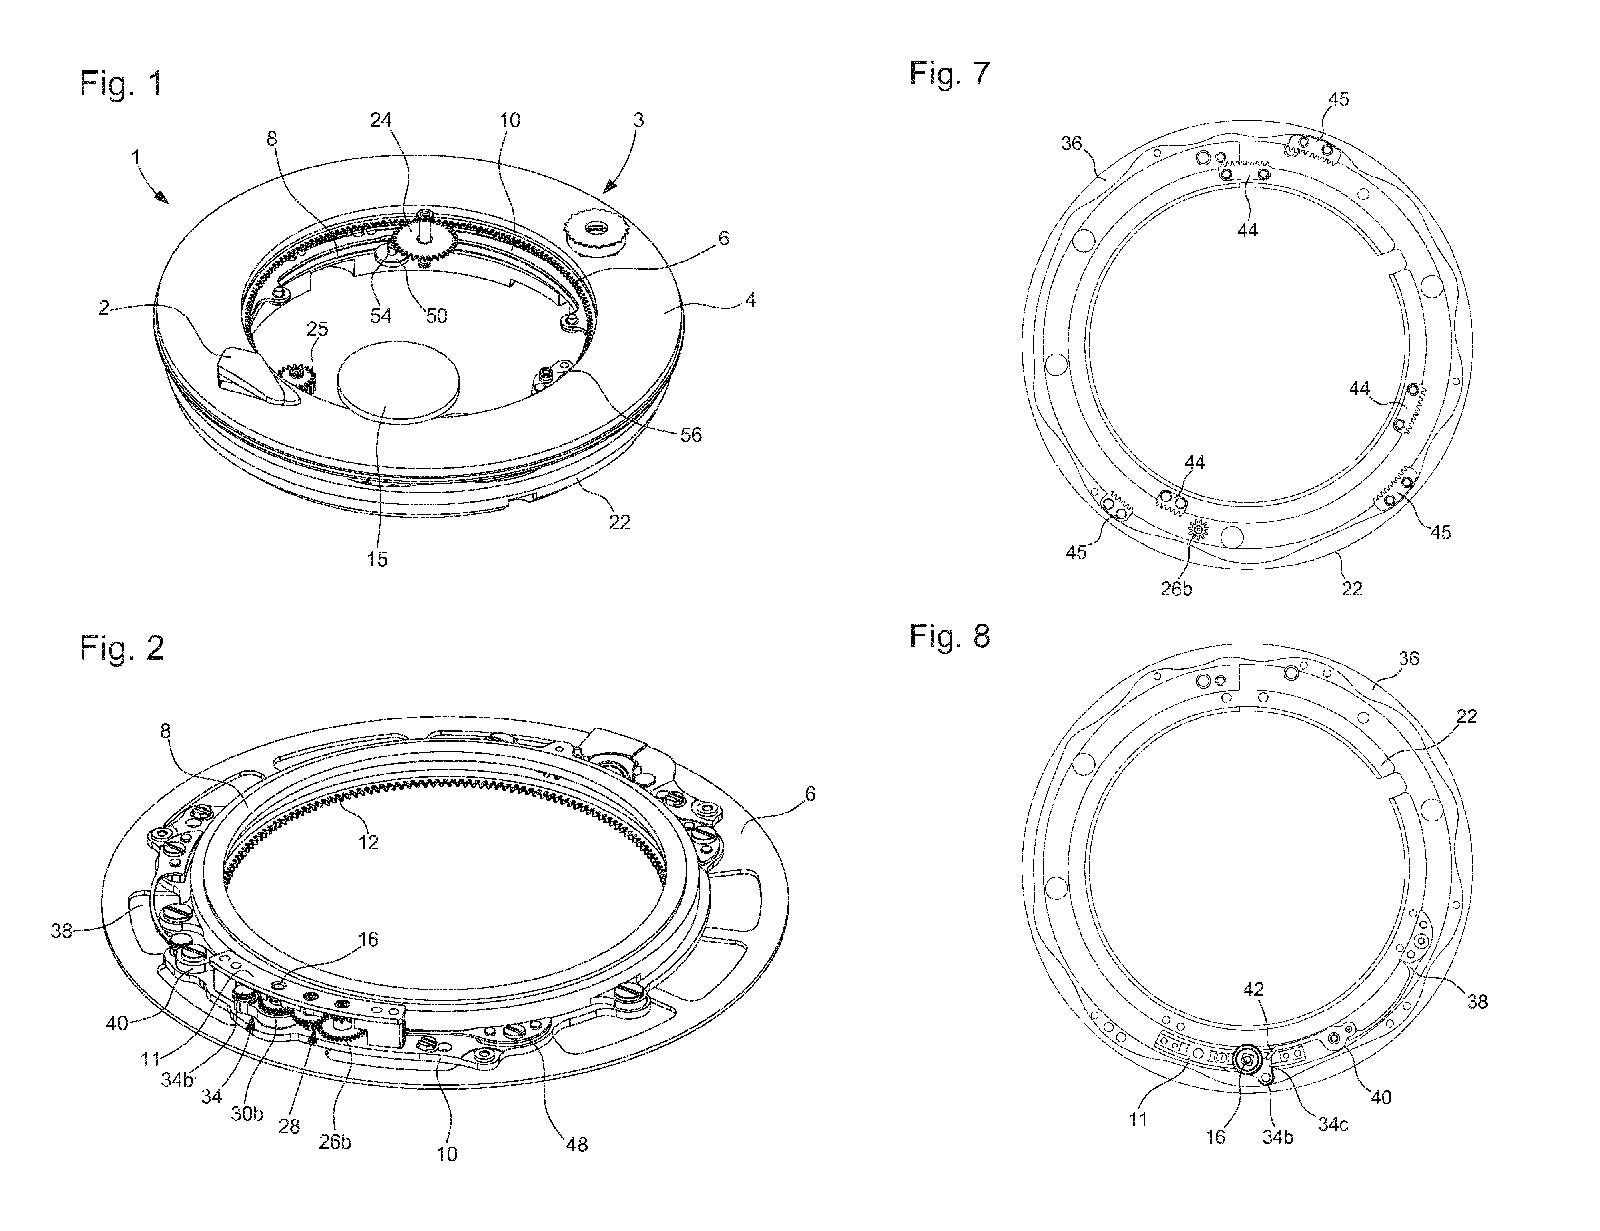 Biểu đồ của cỗ máy dáng bánh vòng donut EP3561610A1 được cấp bằng sáng chế (hình 1 và 2), hình lượn sóng của chuyển động đuôi cá và 3 cặp rãnh (45 và 45) cho chuyển động đầu của cá Koi (hình 7 và 8)